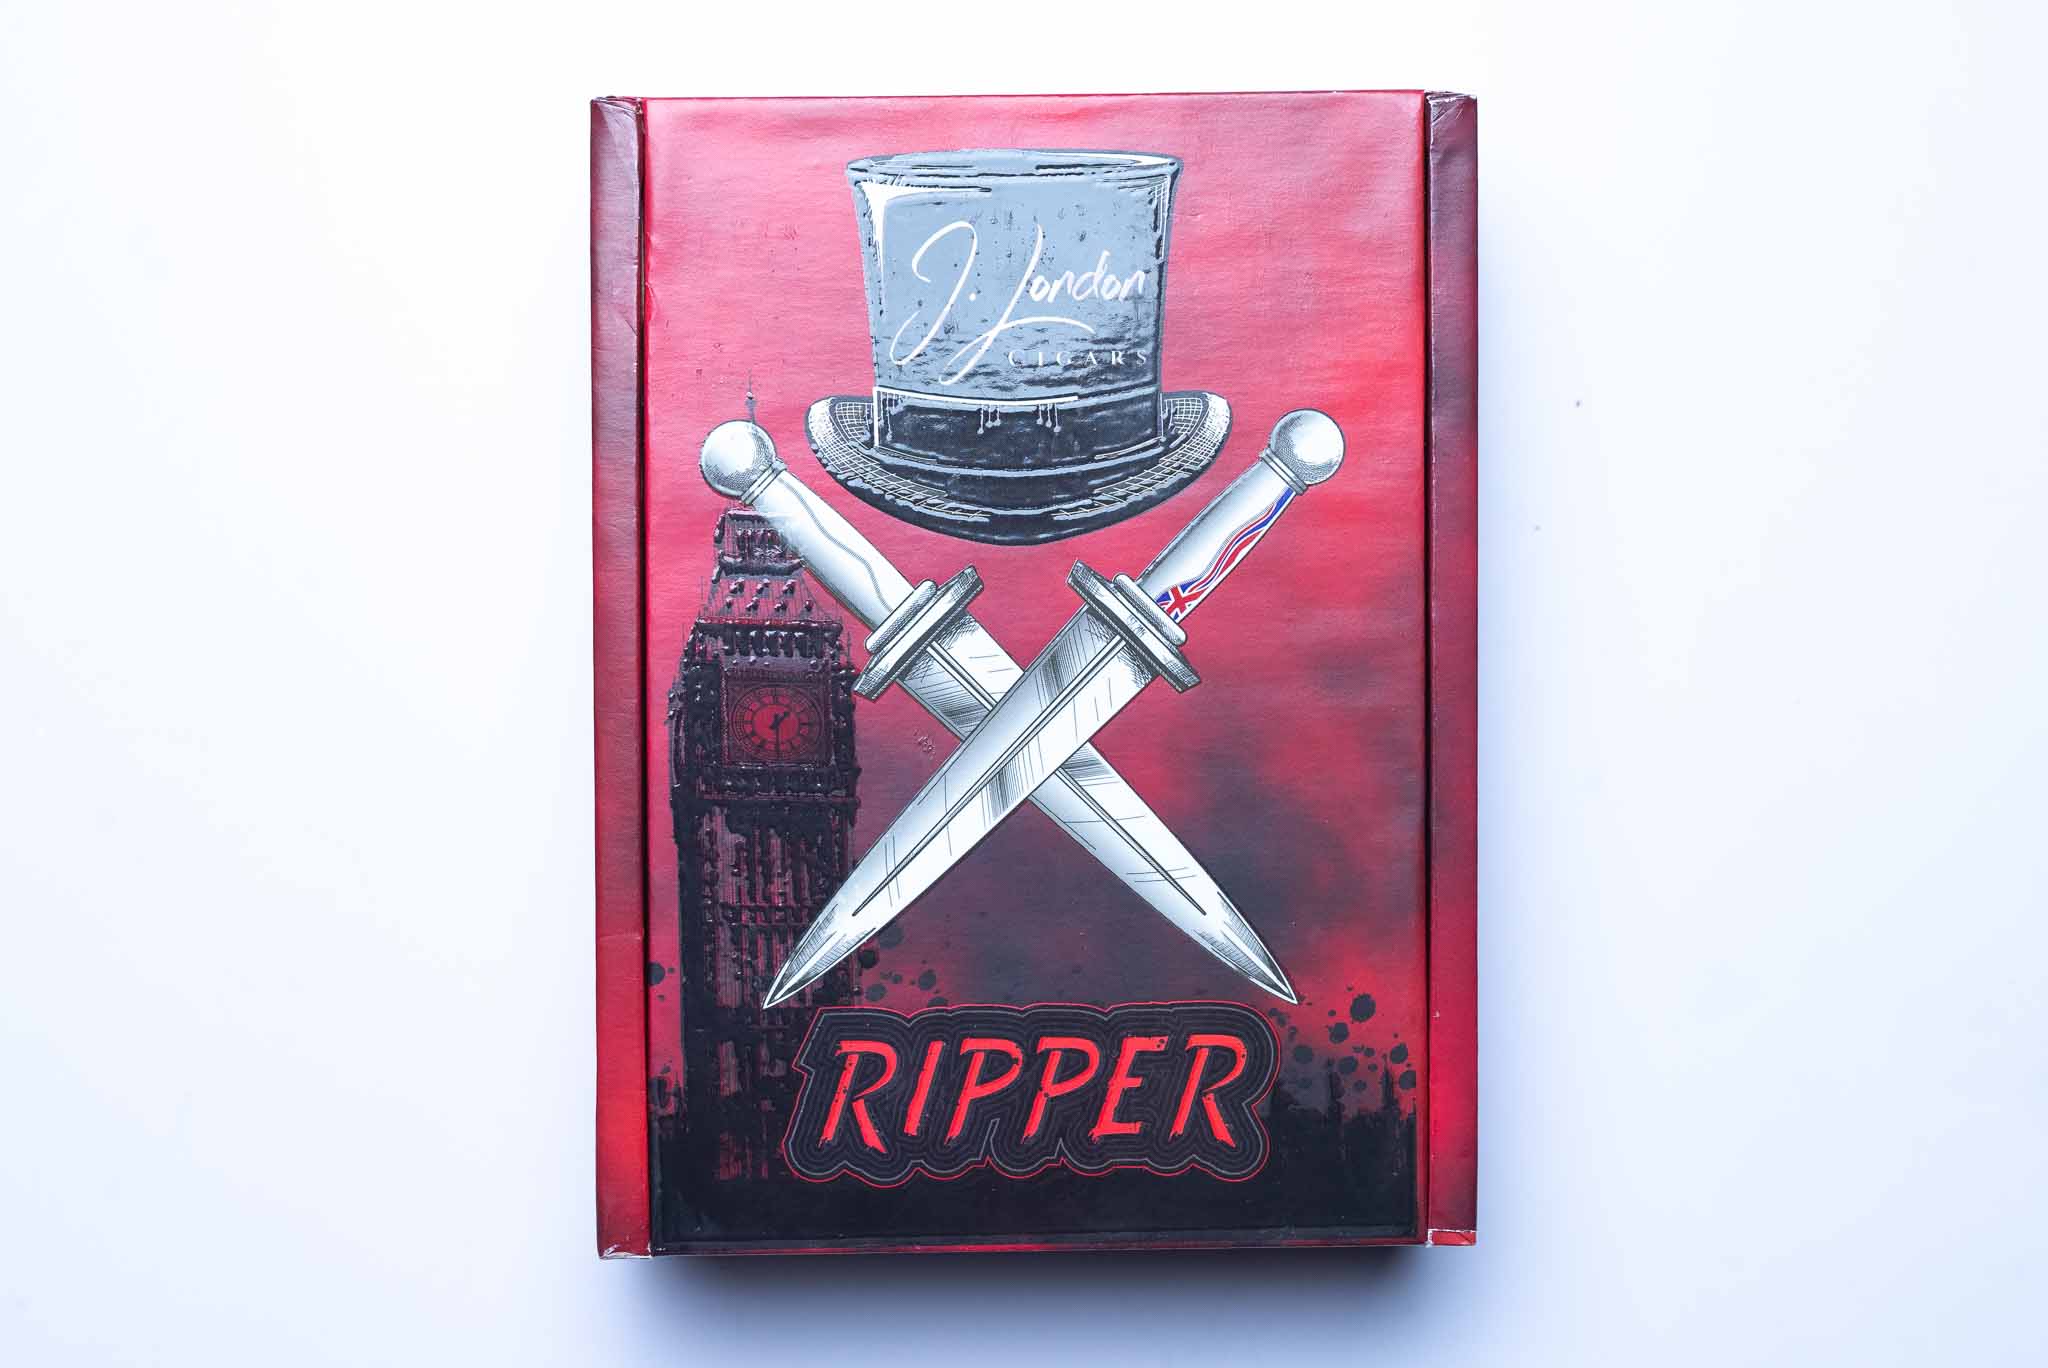 J. London The Ripper